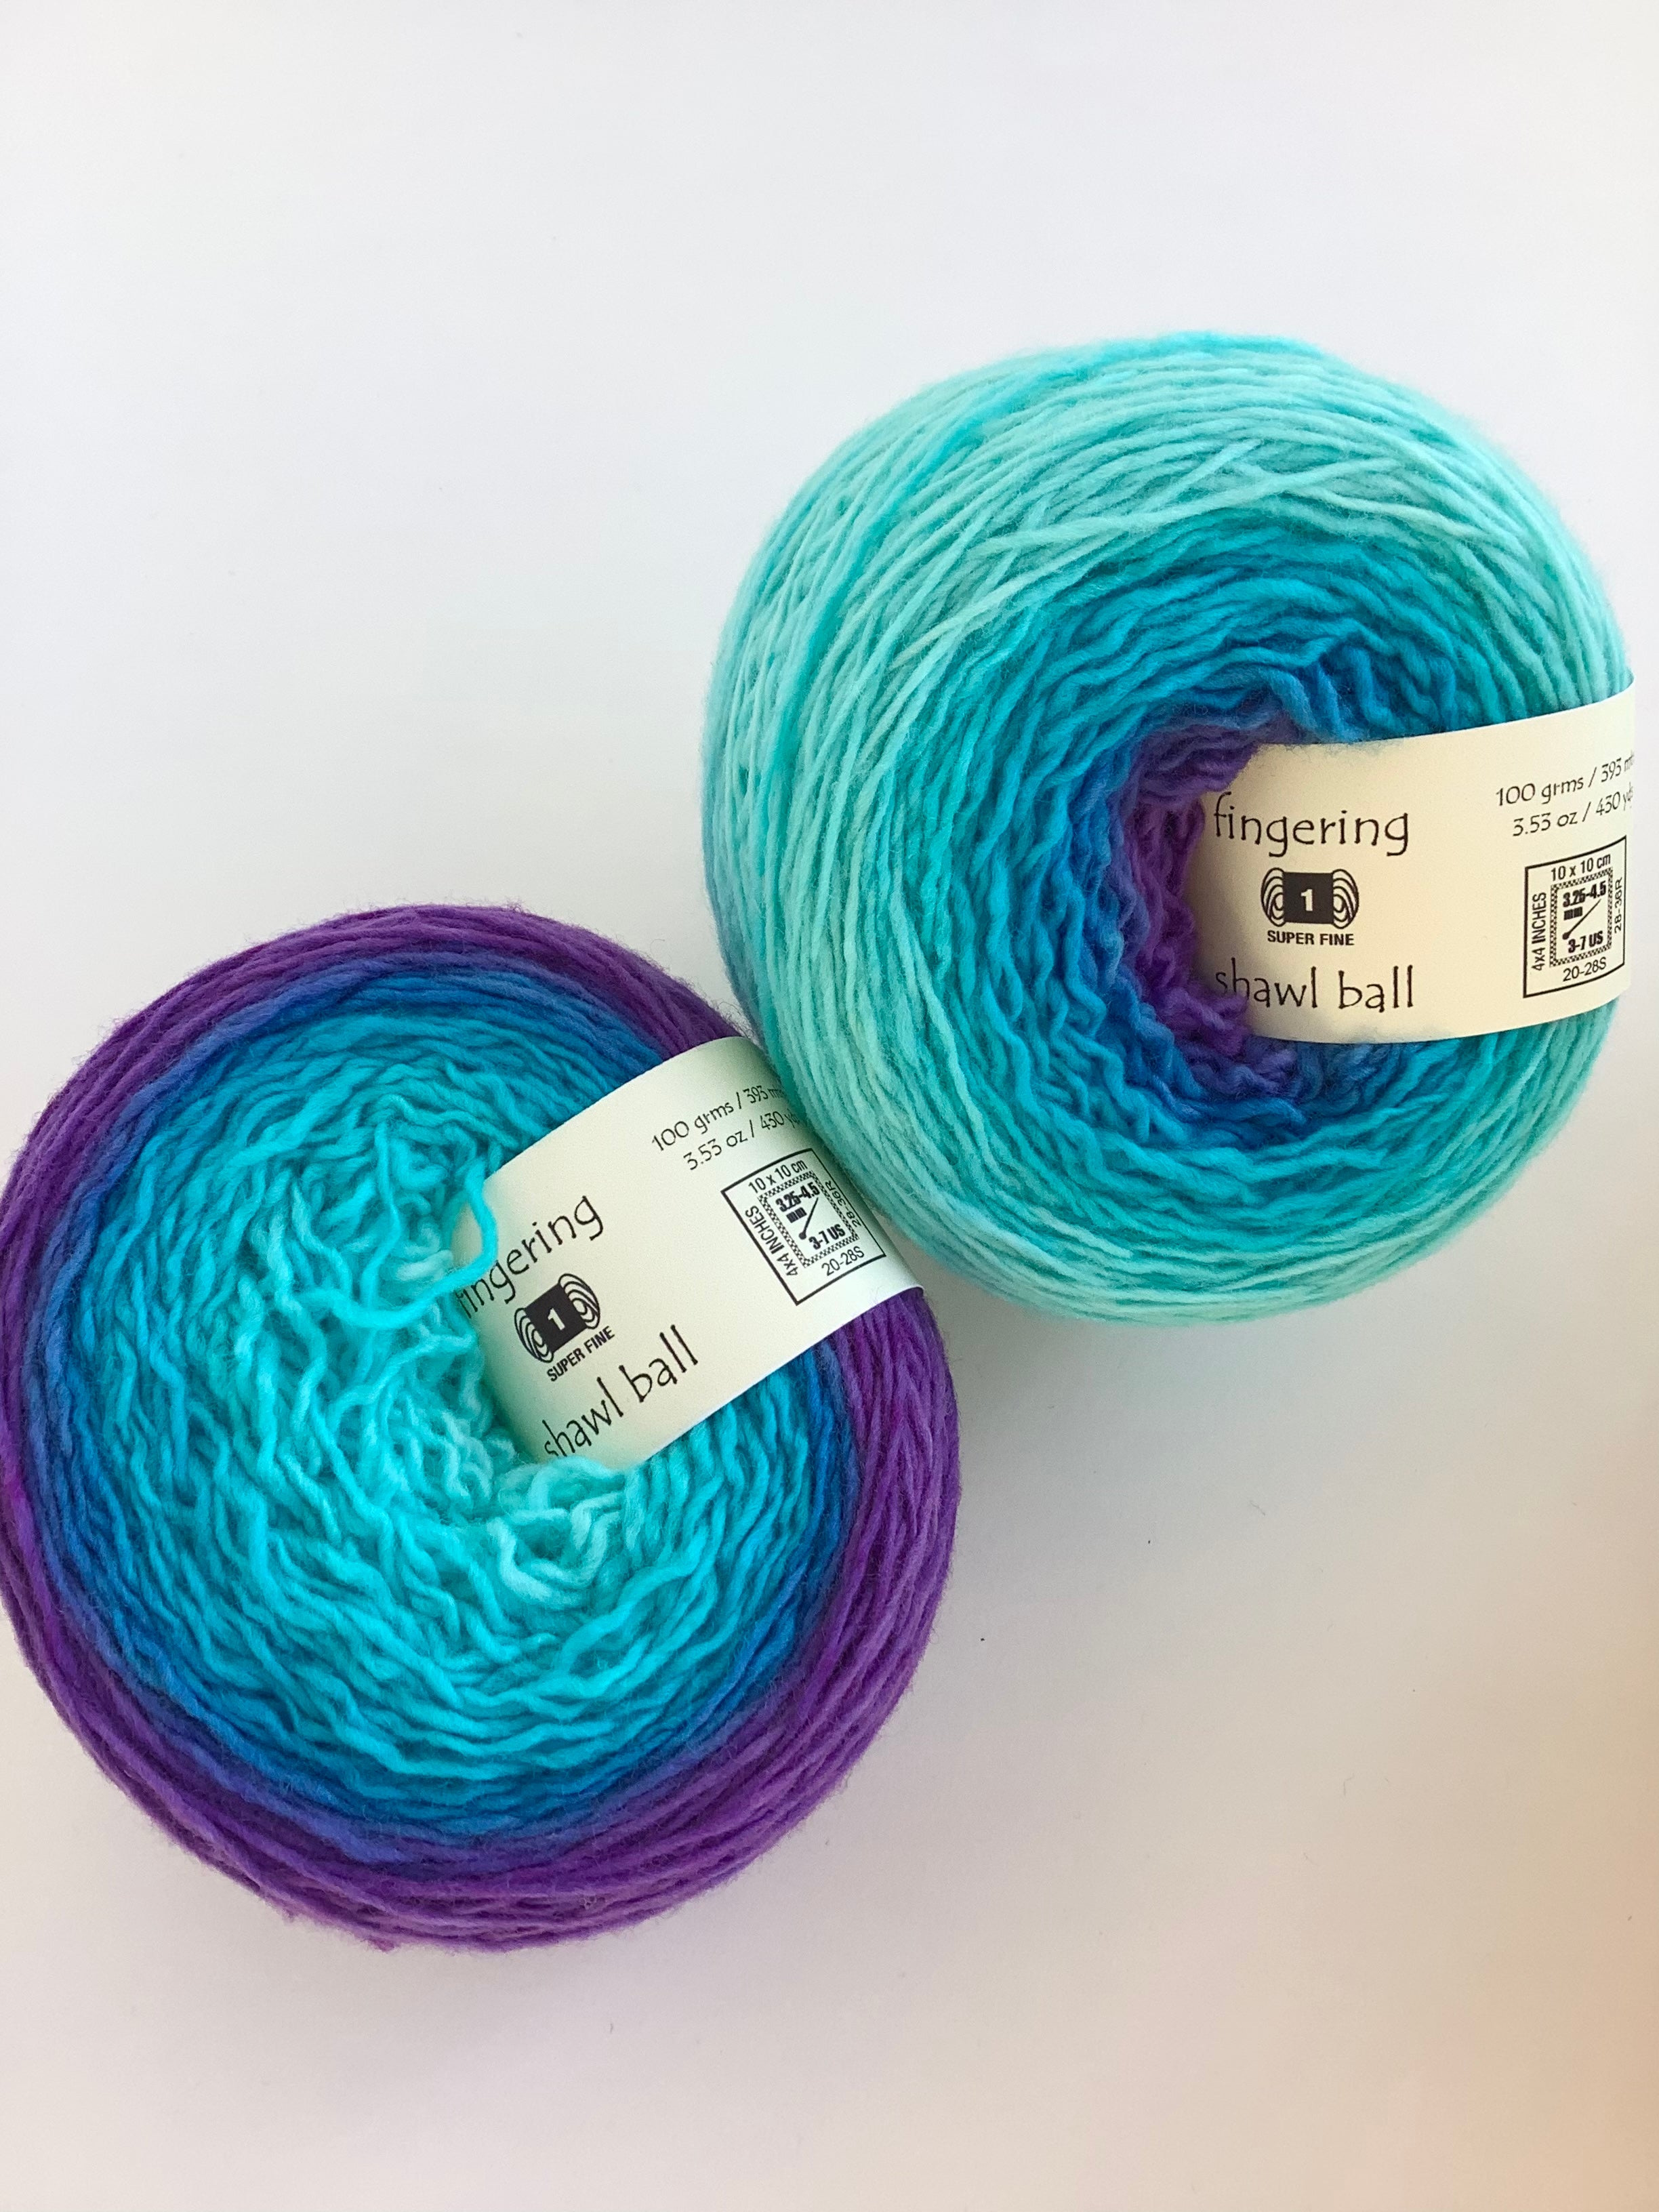 Blue Velvet - Ombré Merino Fingering Shawl Ball yarn from Freia 